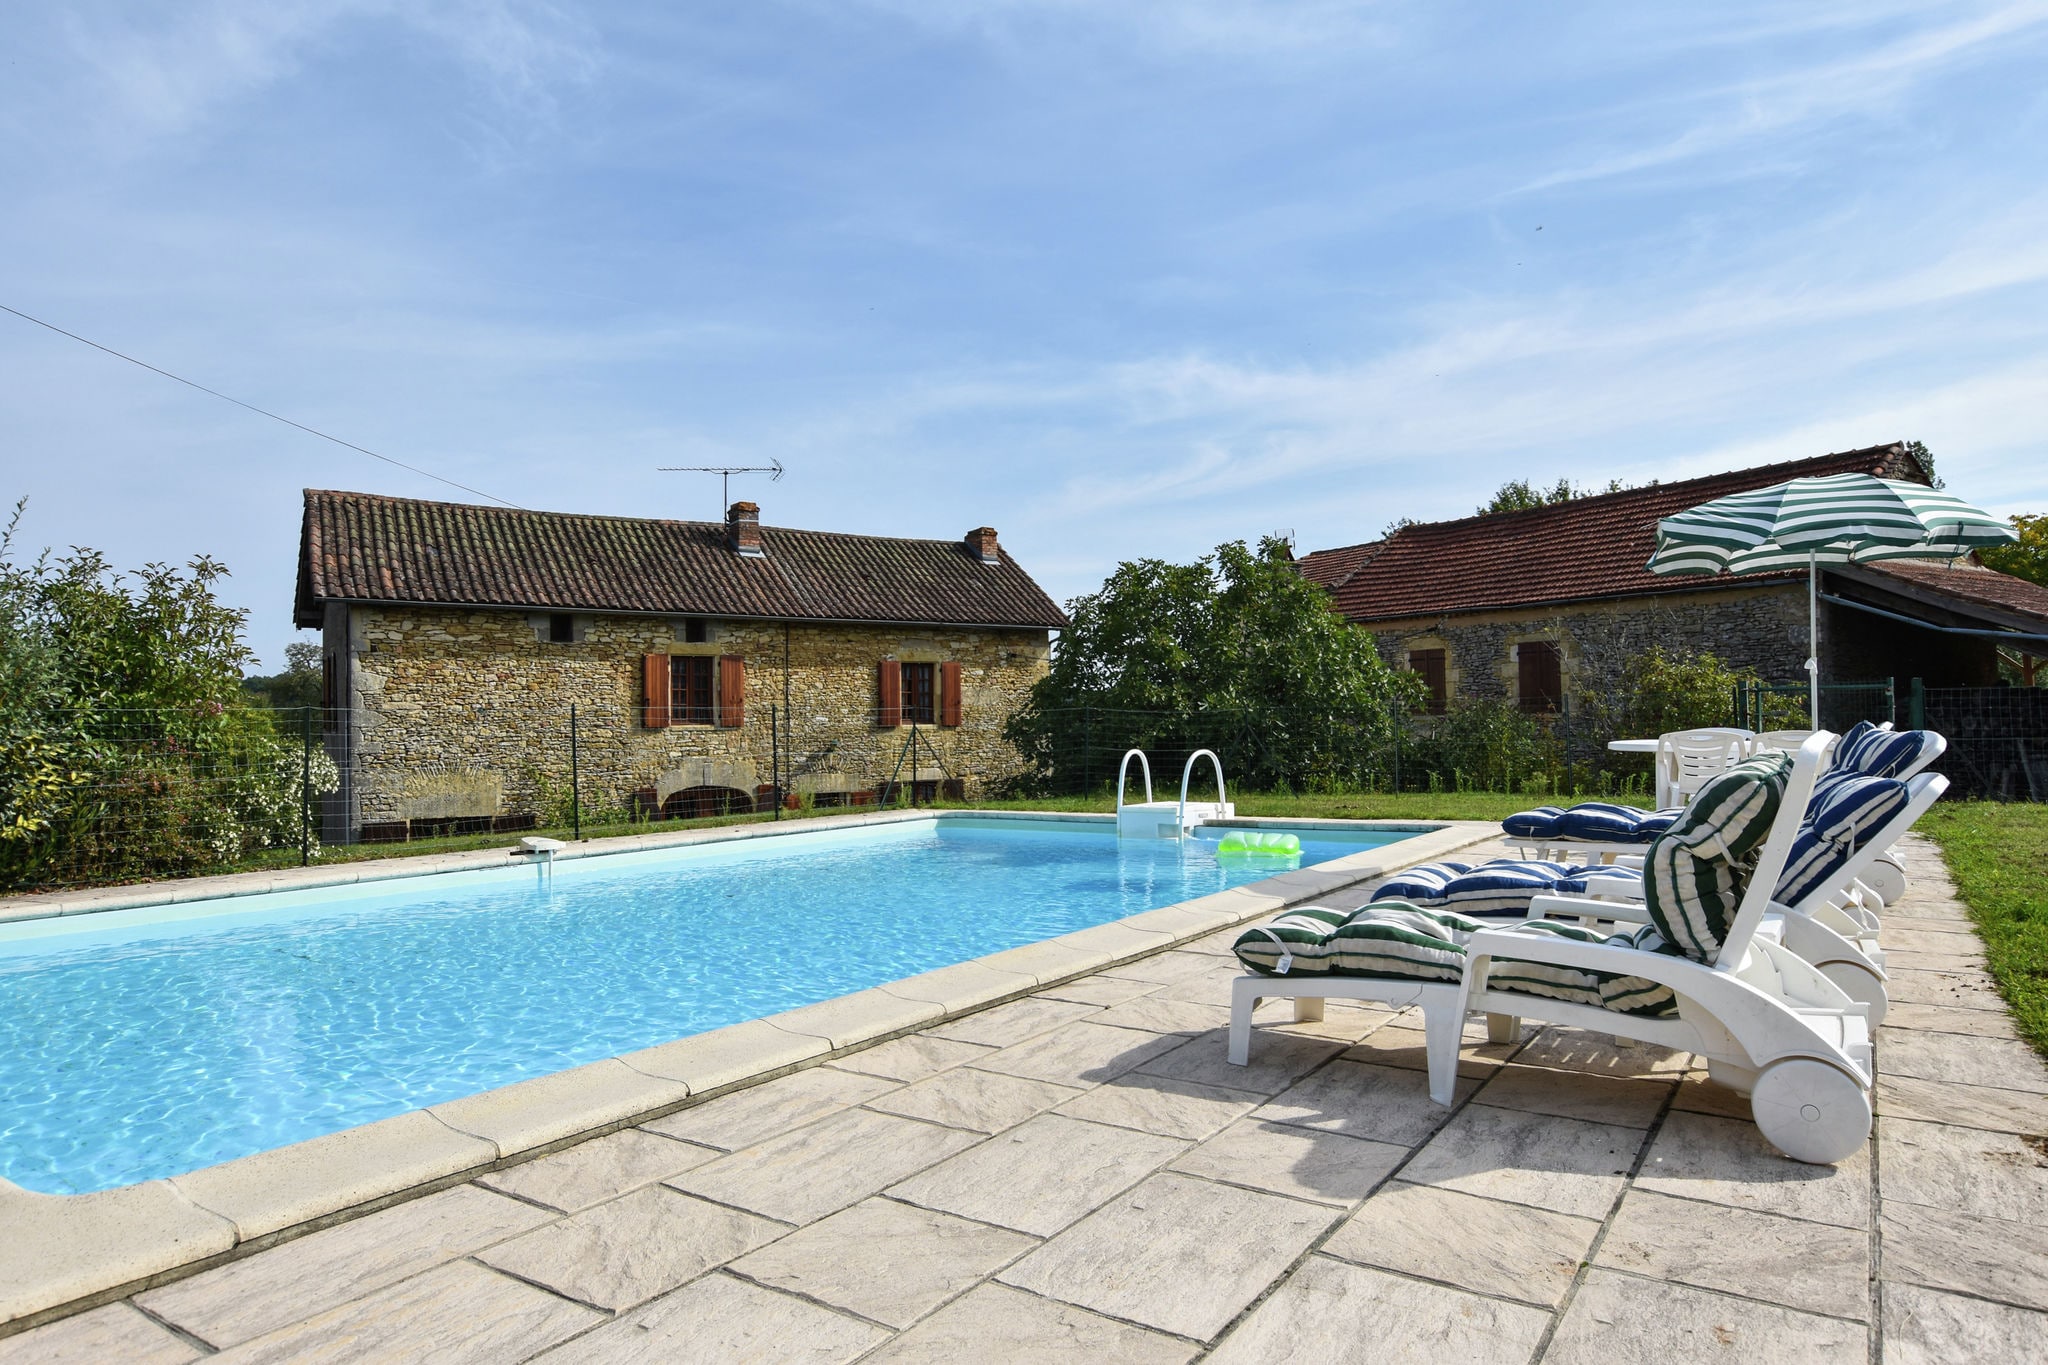 Charaktervolles Ferienhaus mit eigenem Pool und schönen Dörfern in der Nähe.